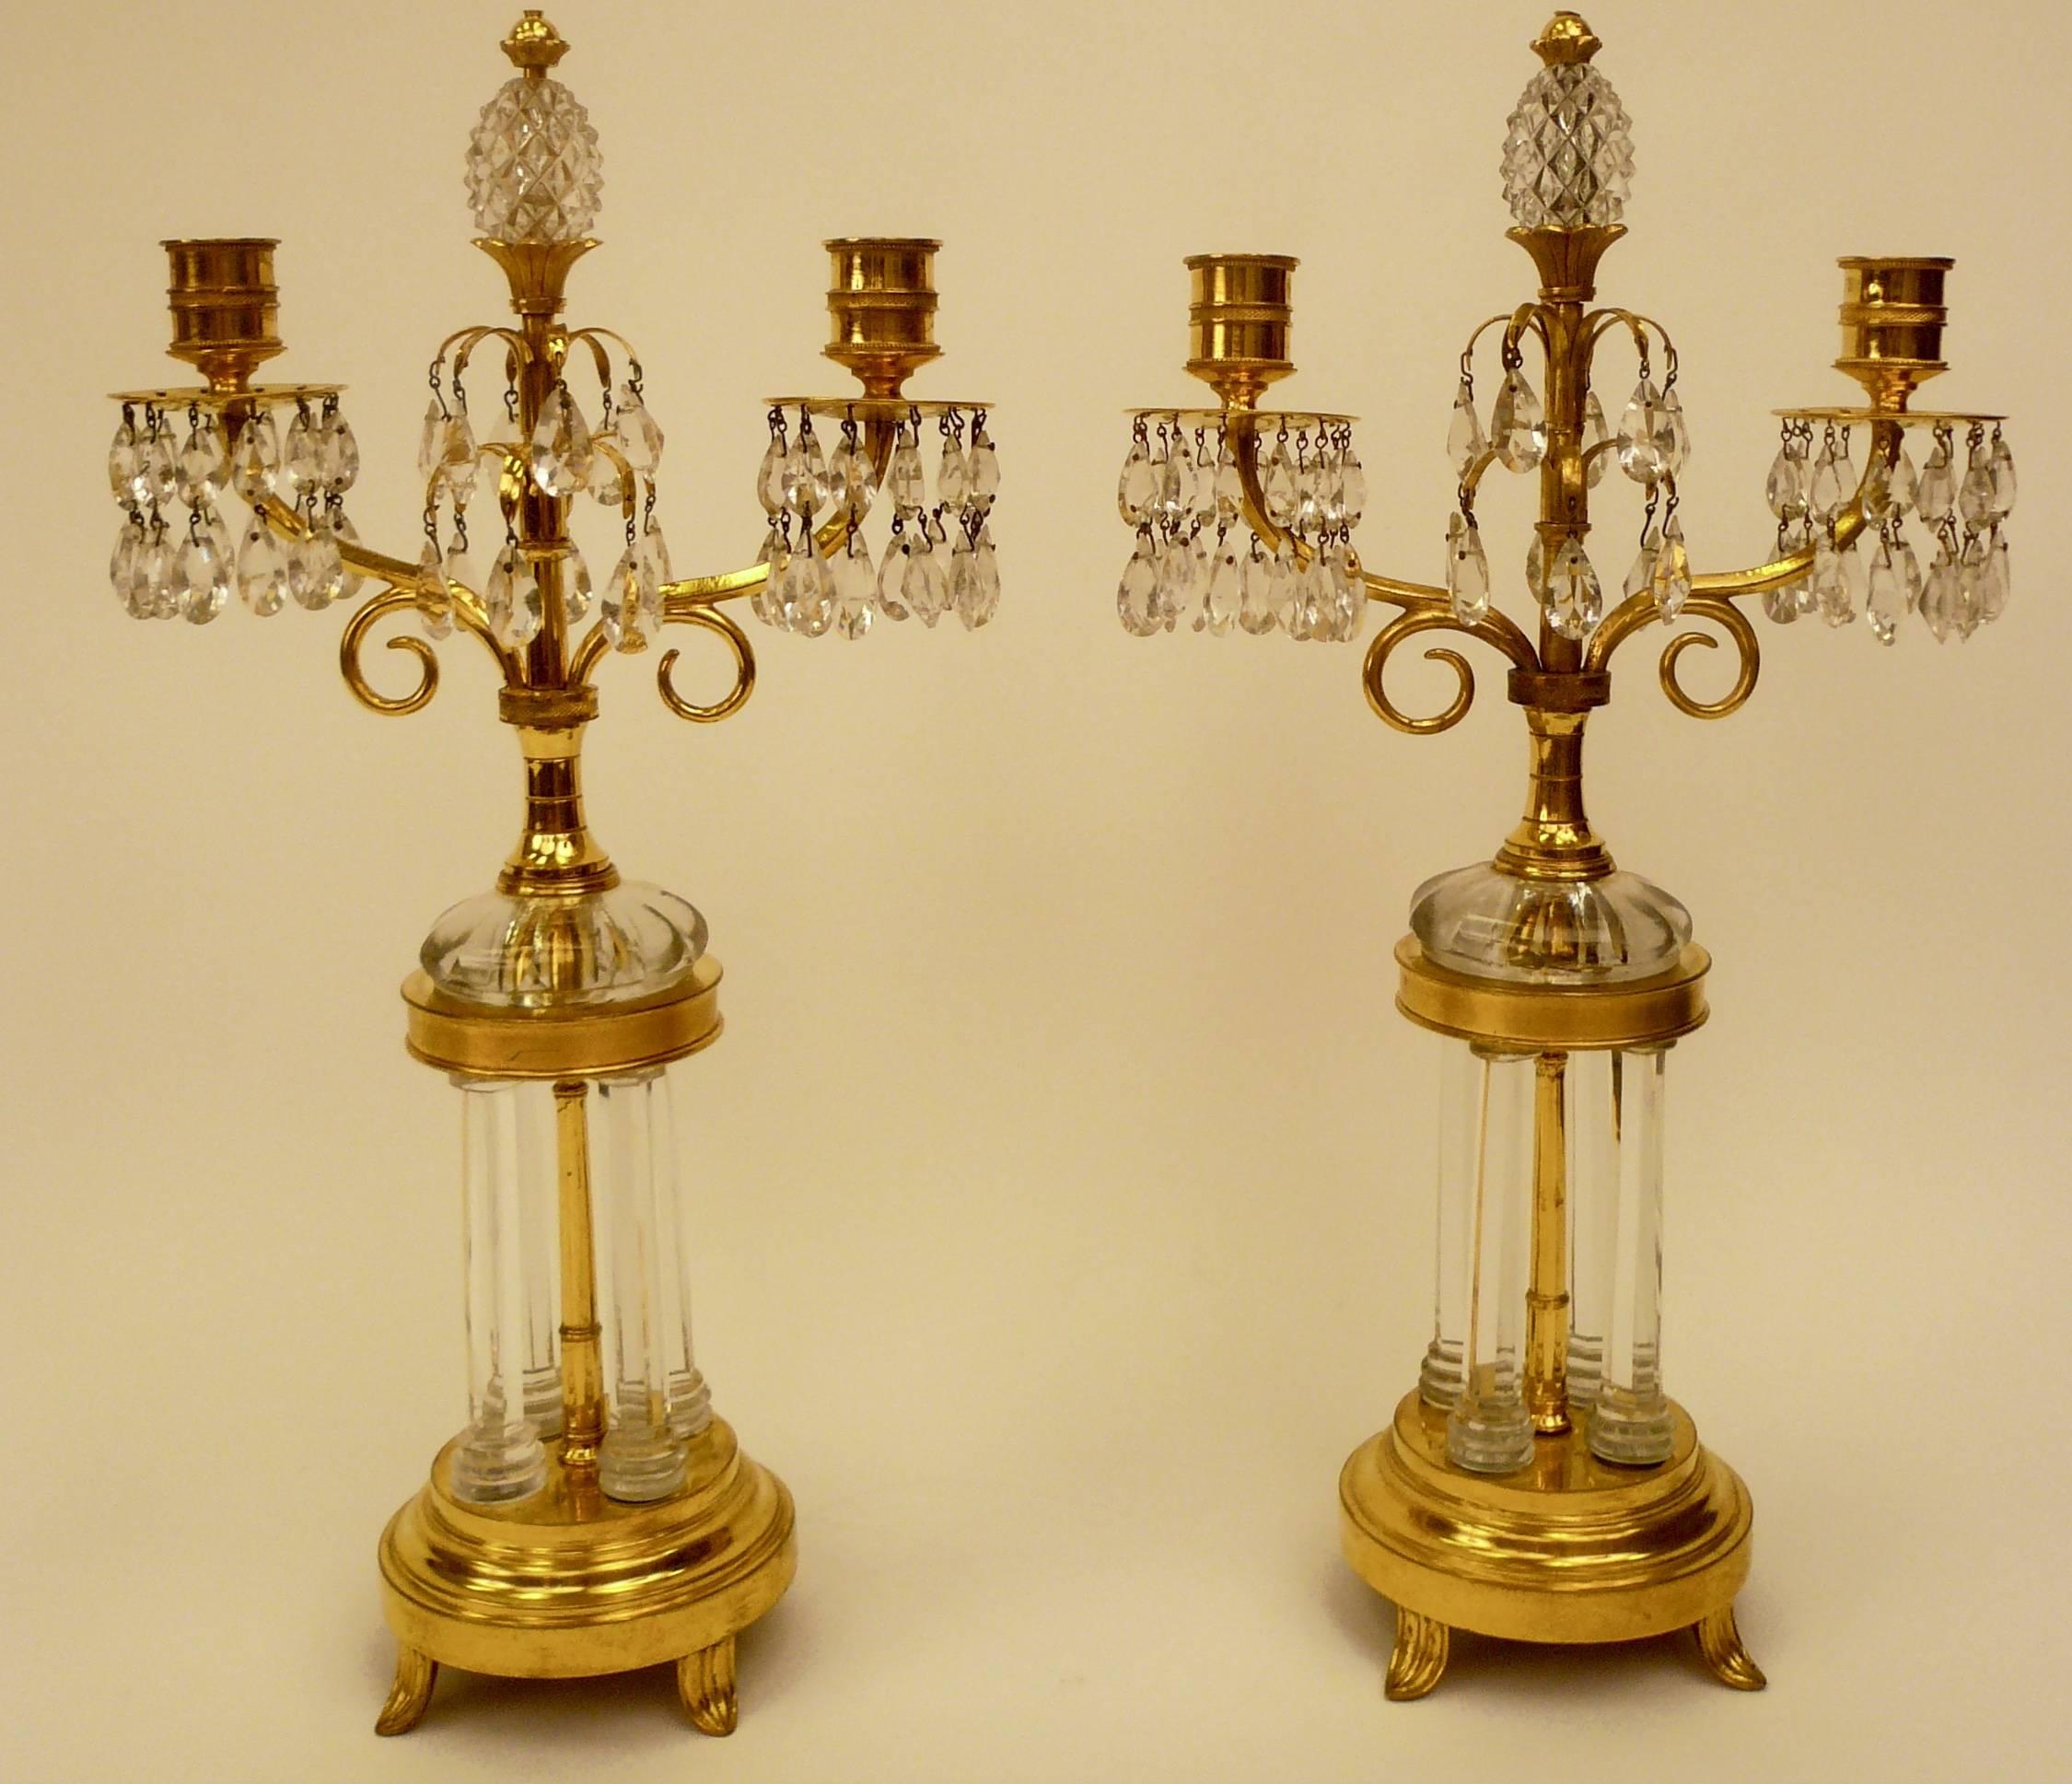 Cette paire de candélabres avec des bases en forme de temples de jardin miniatures est attribuée à William Parker et date de 1800. Parker a fourni des lustres au Prince de Galles pour Carlton House. Voir Martin Mortimer ; The English glass